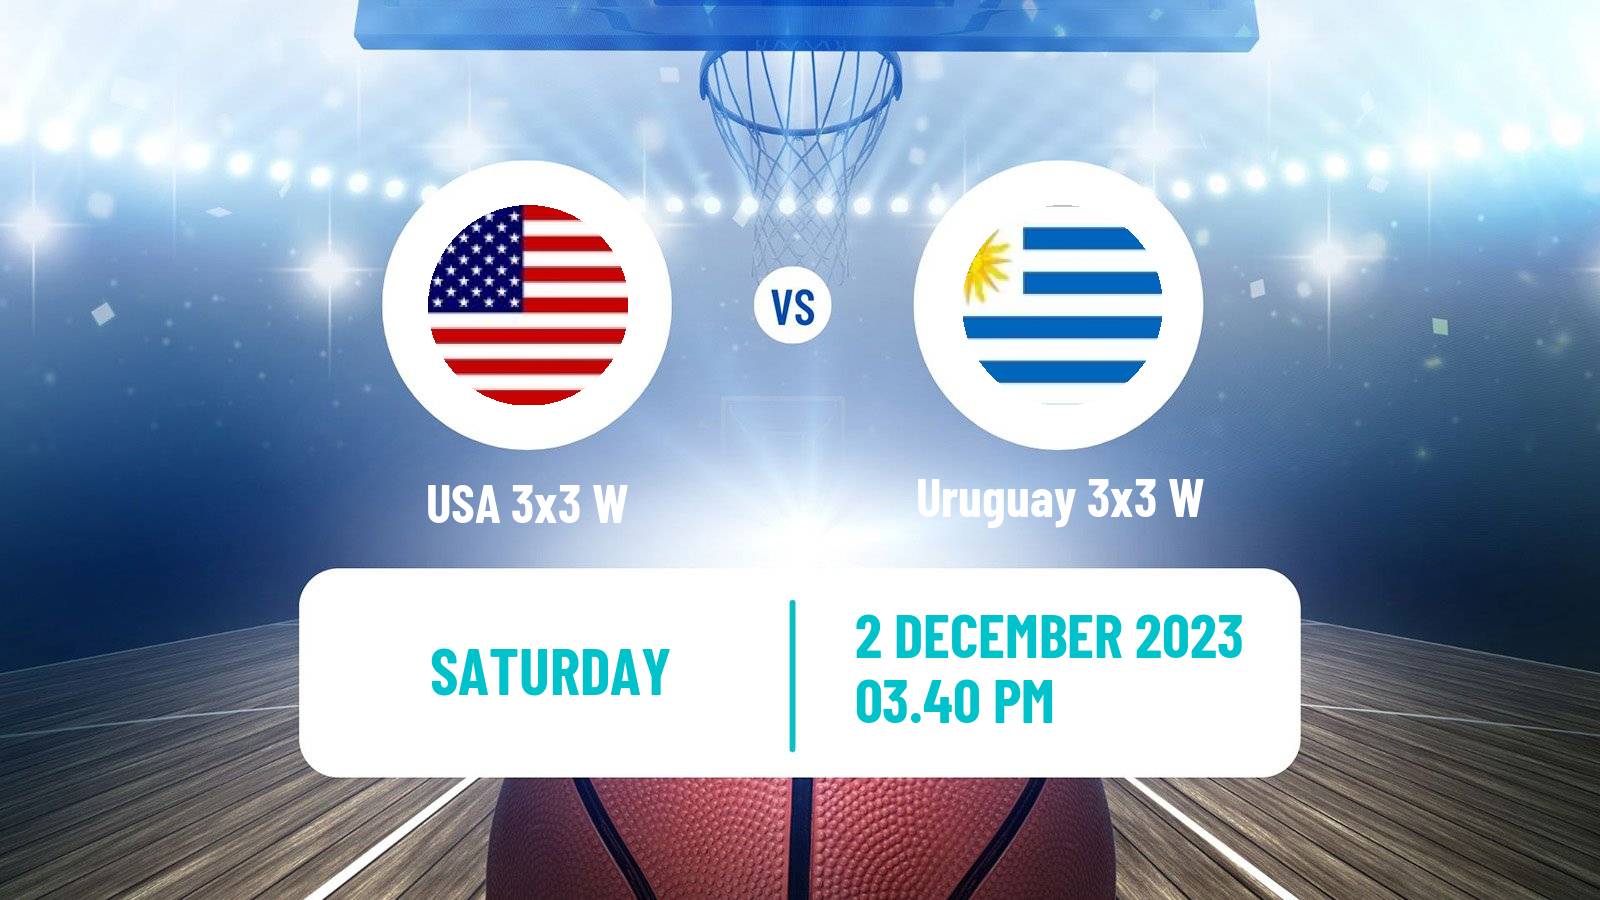 Basketball Americup 3x3 Women USA 3x3 W - Uruguay 3x3 W